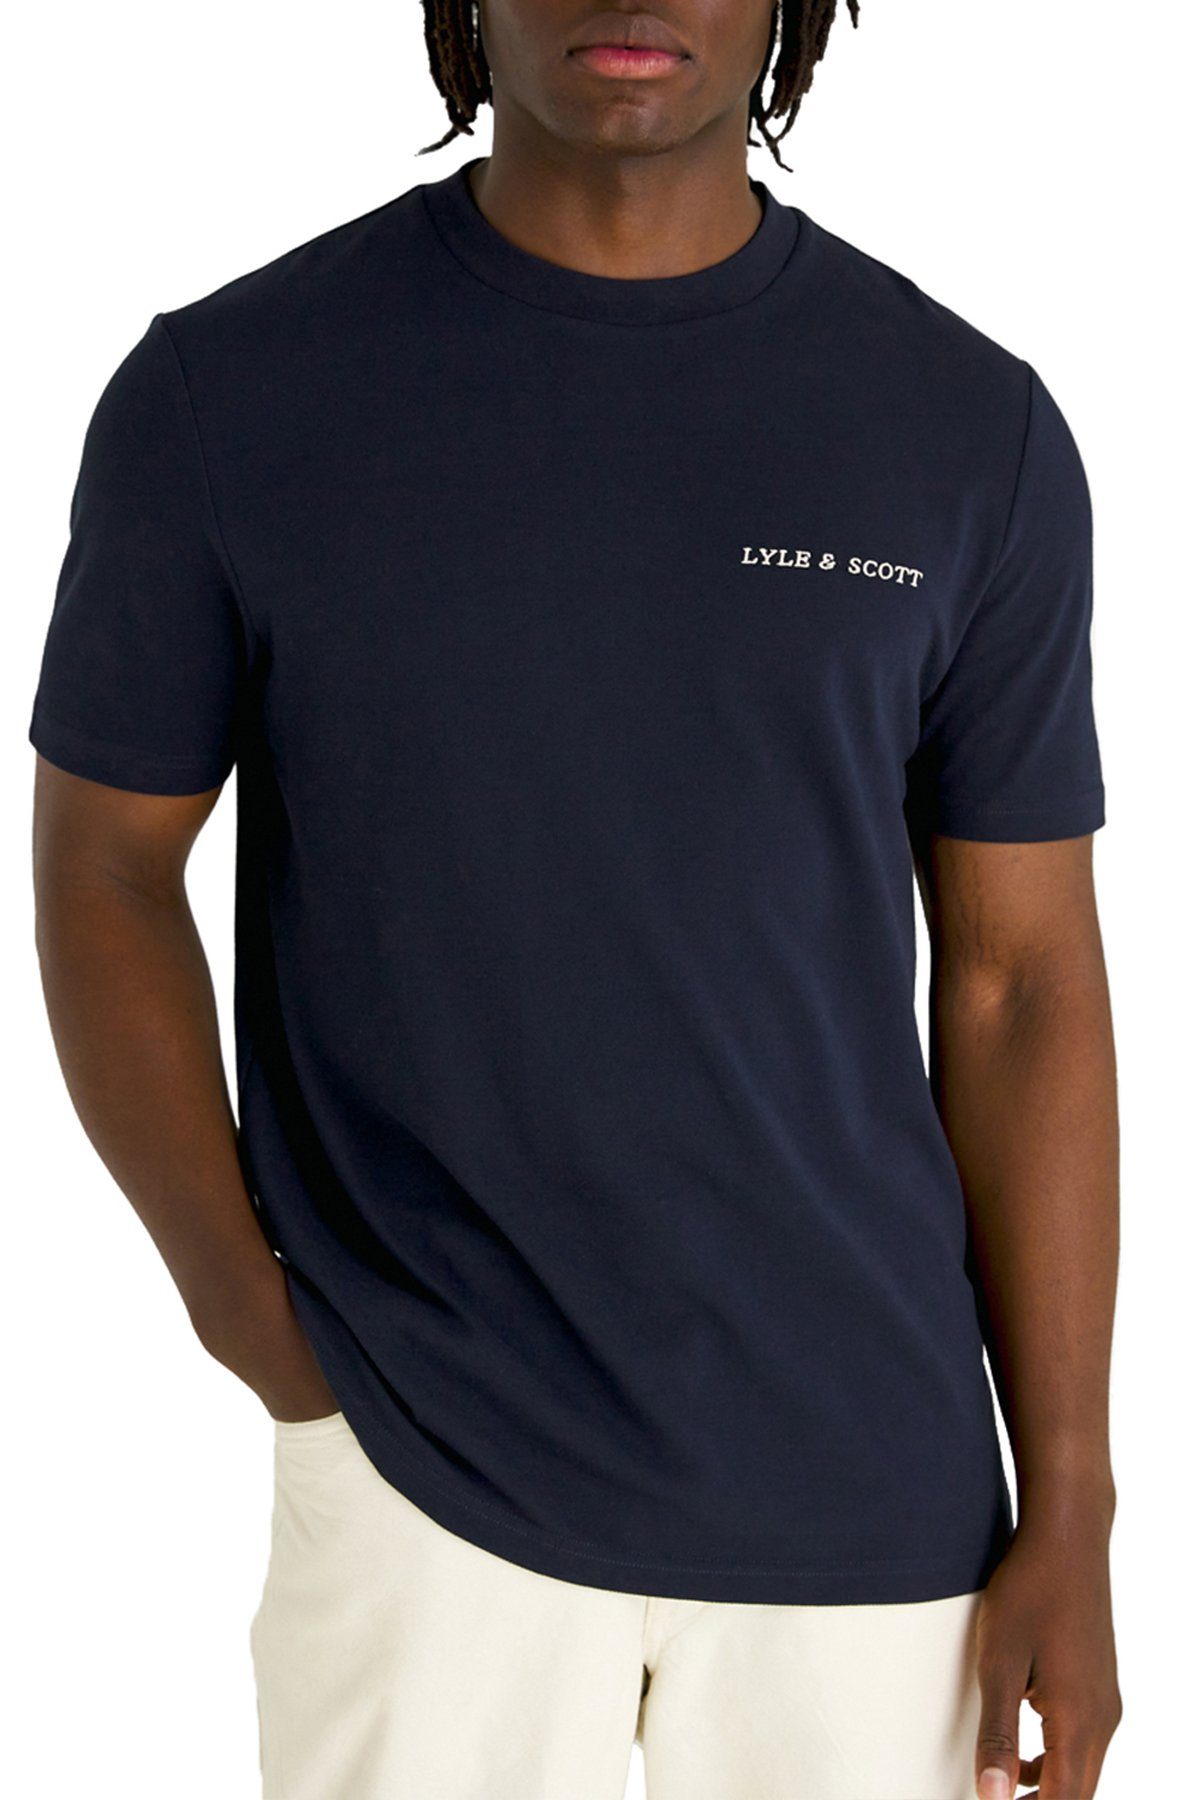 Lyle & Scott T-Shirt Mit Brustprint marine